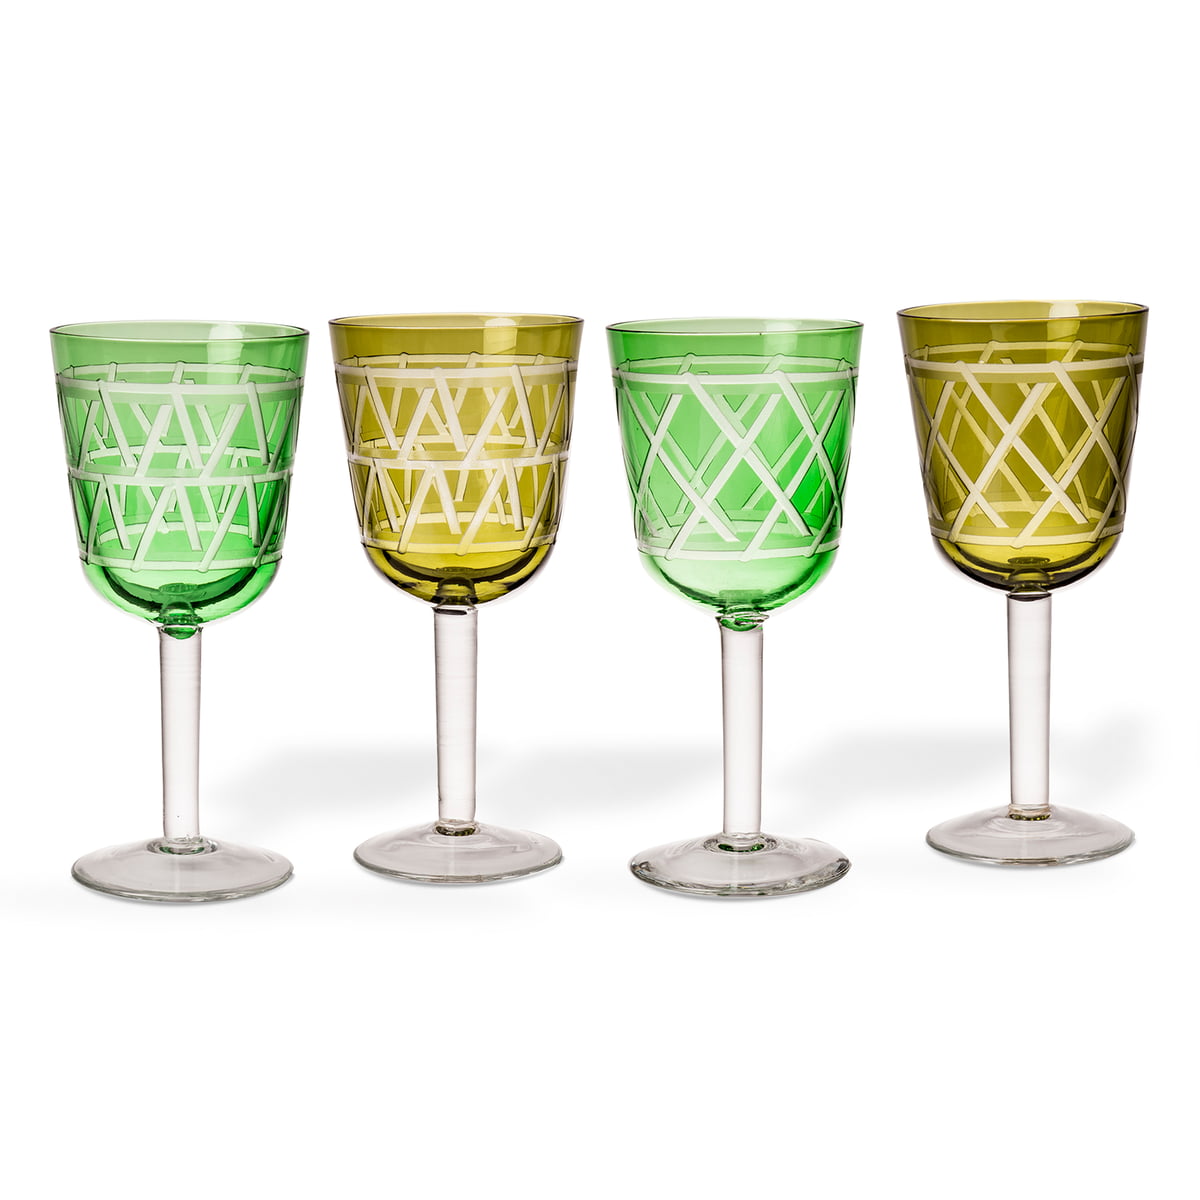 pols potten - tie verre à vin, multicolore (set de 4)